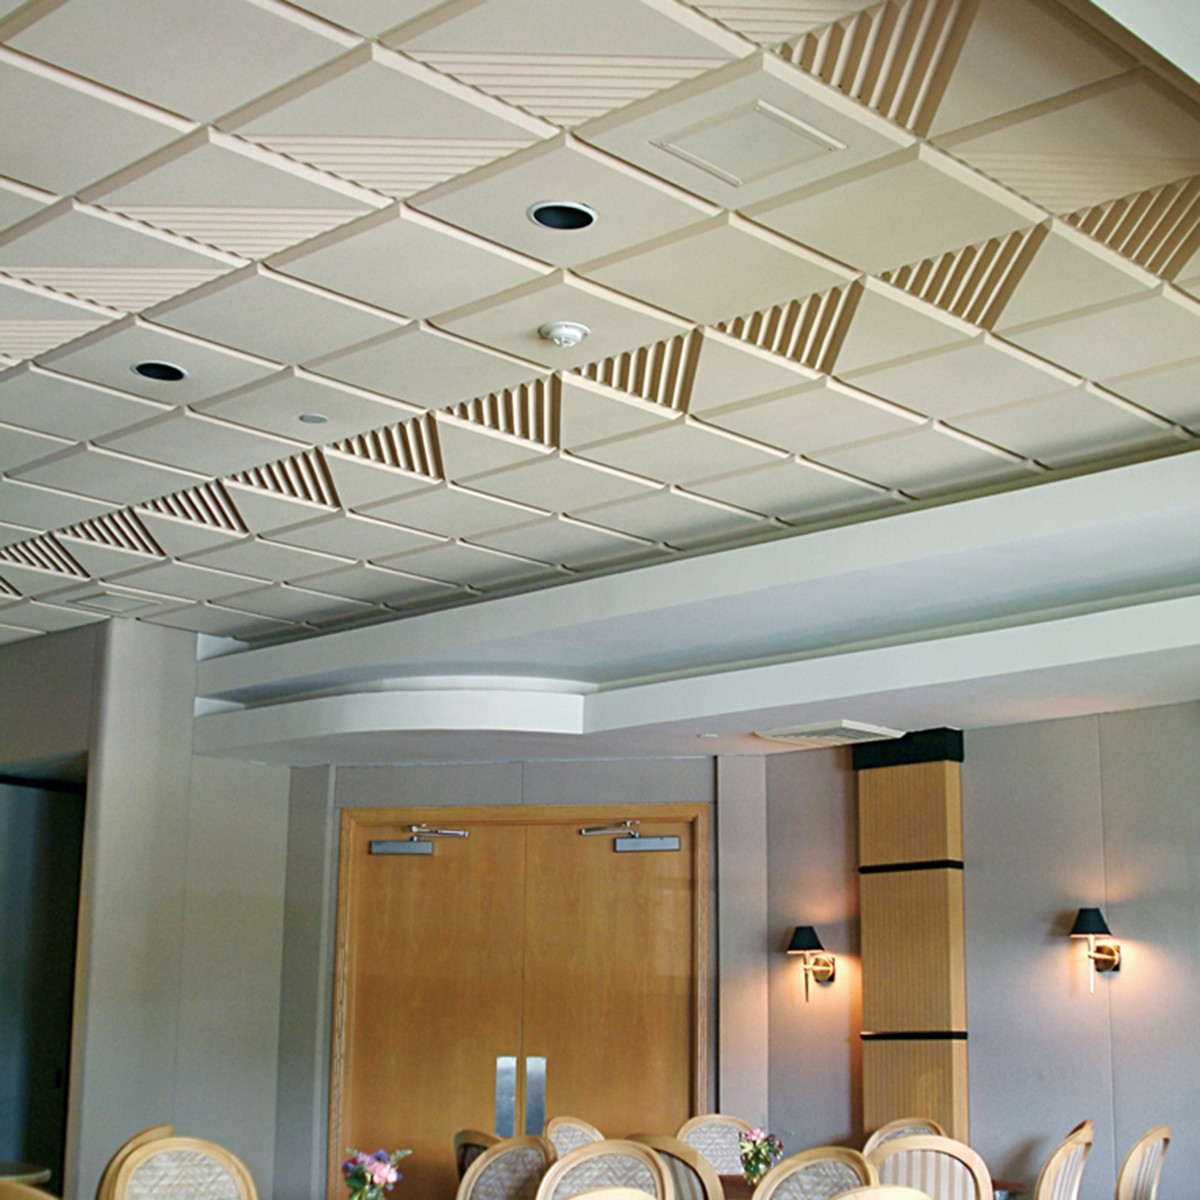 Acoustic Ceiling Tile Styles Acoustic Ceiling Tile Styles tile awesome ceiling tile acoustic style home design excellent 1200 X 1200